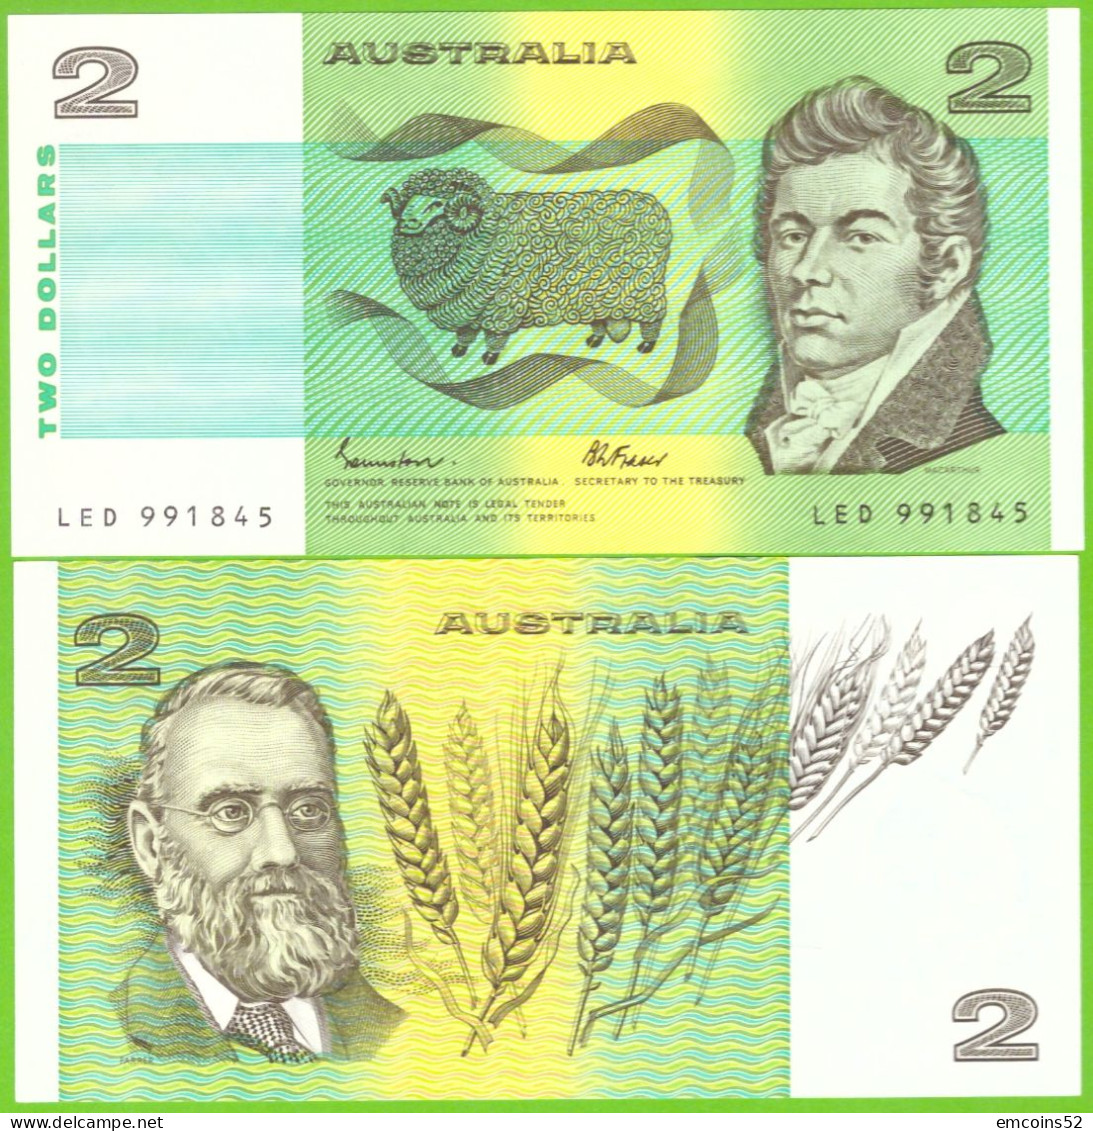 AUSTRALIA 2 DOLLARS 1985 P-43e UNC - 1974-94 Australia Reserve Bank (papier)